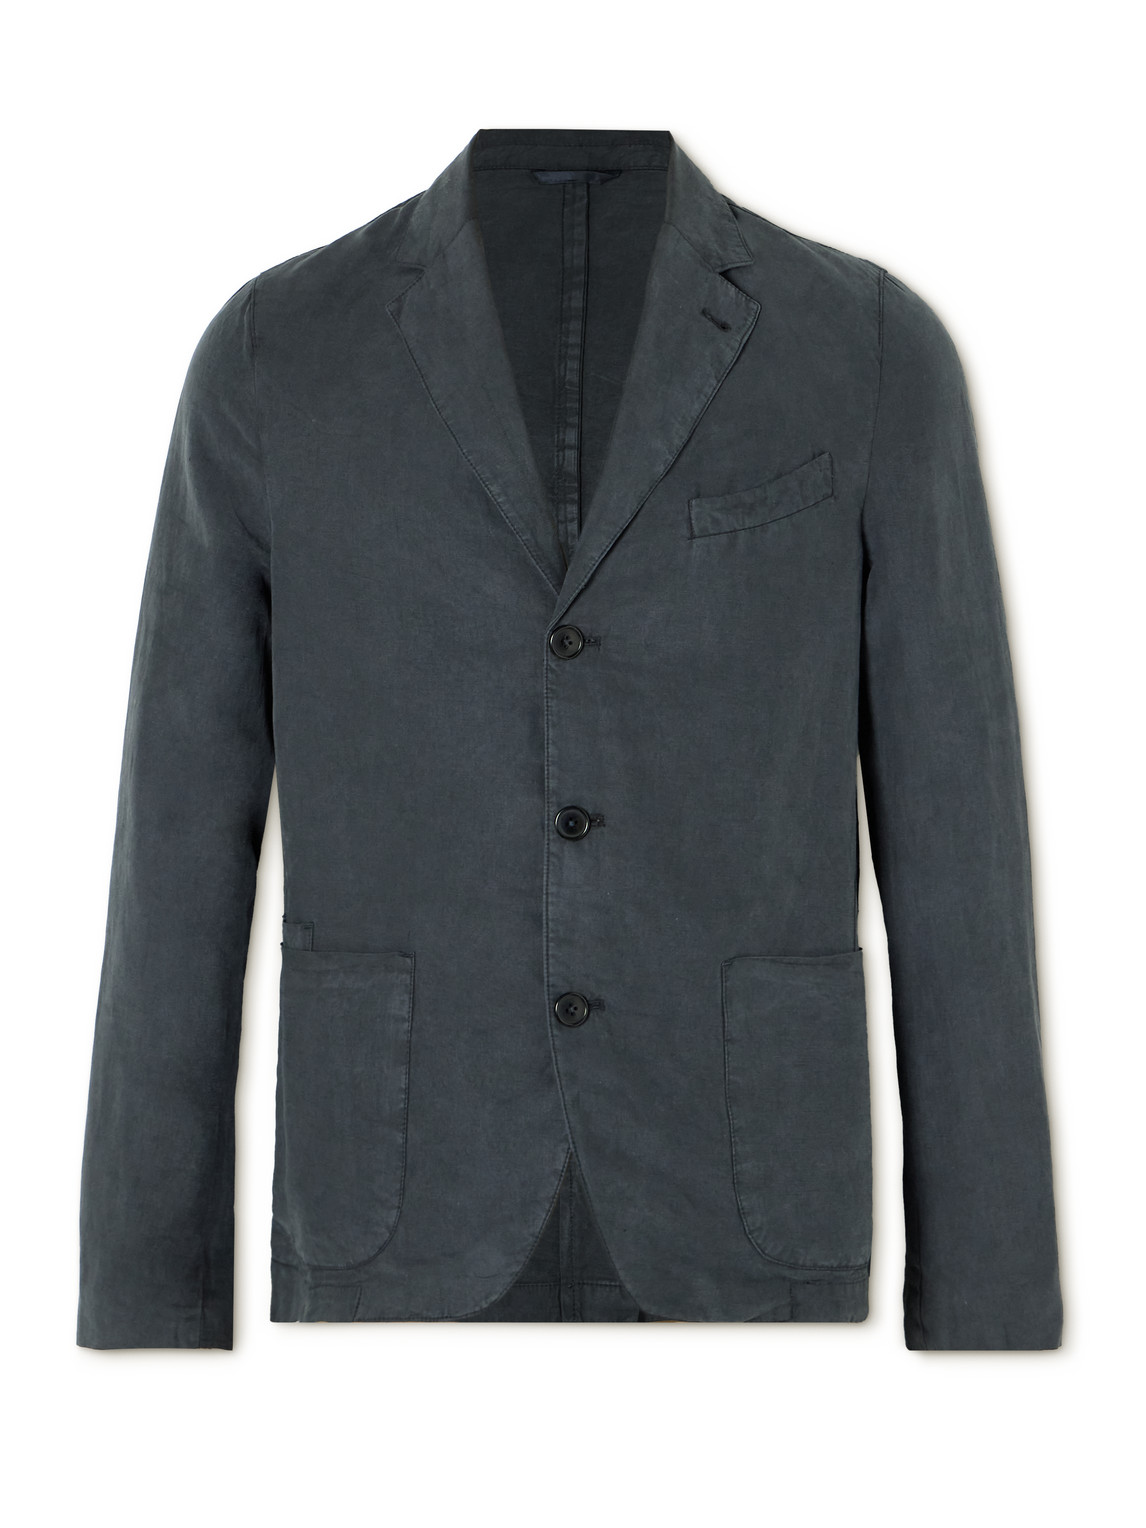 Officine Générale Armie Unstructured Lyocell, Linen and Cotton-Blend Twill Suit Jacket